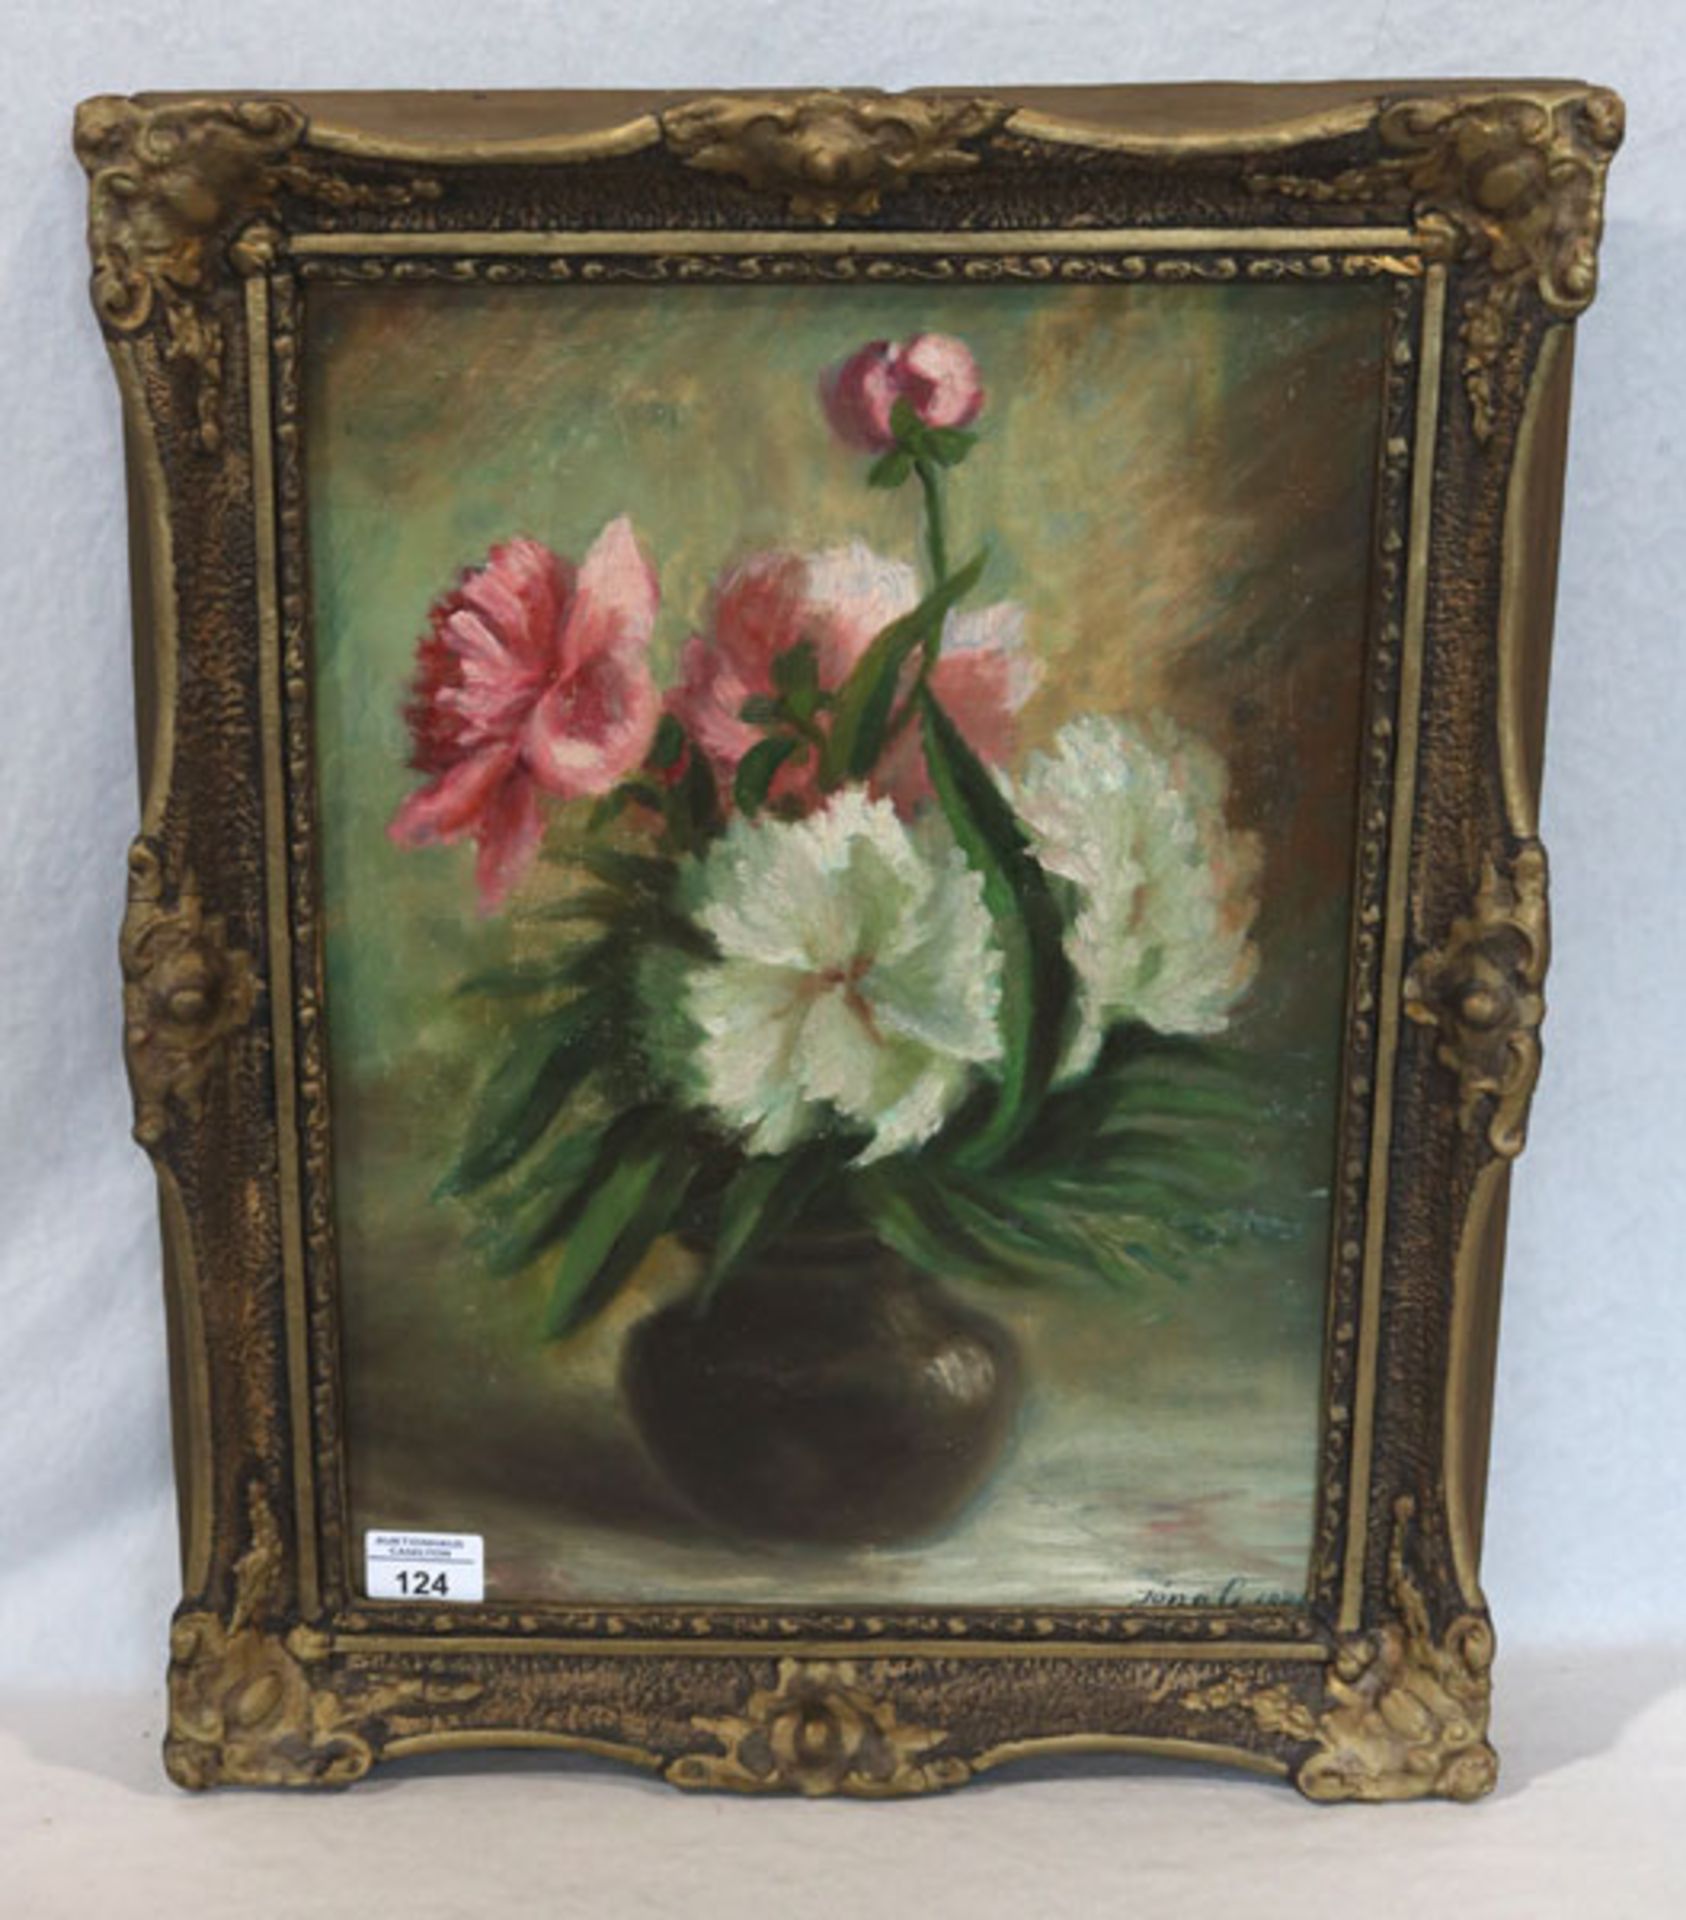 Gemälde ÖL/Malkarton 'Blumenstilleben in Vase', signiert Jona G.1948, gerahmt, Rahmen beschädigt,